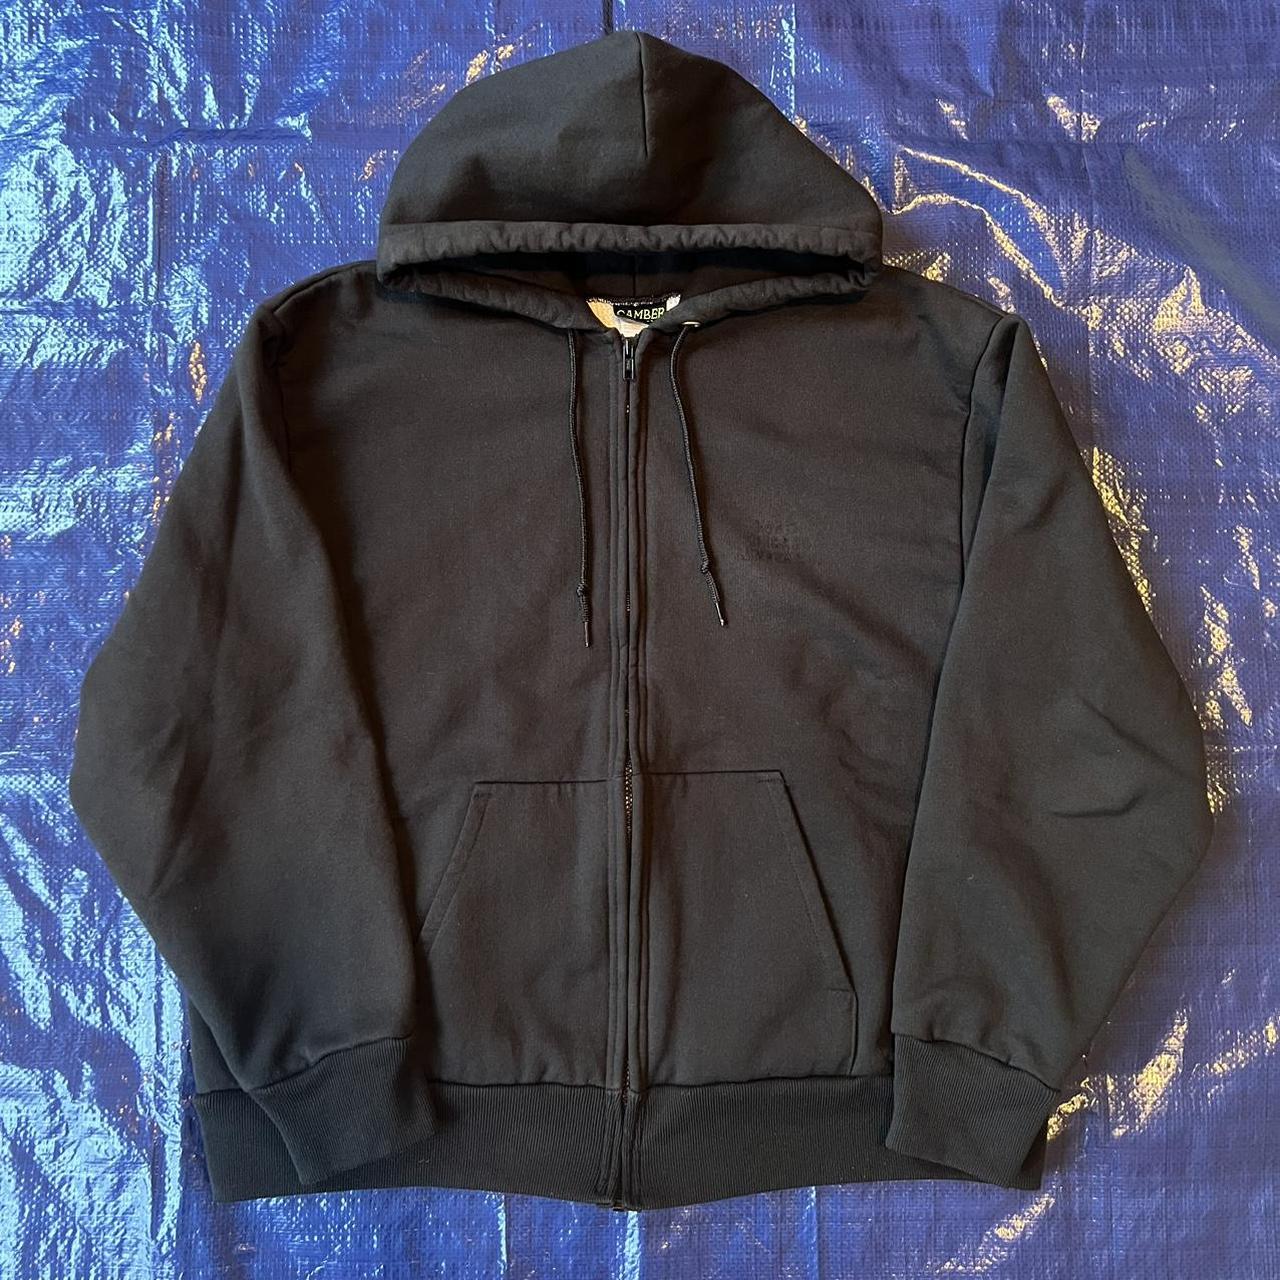 Vintage Camber Thermal lined zip up hoodie Made in... - Depop